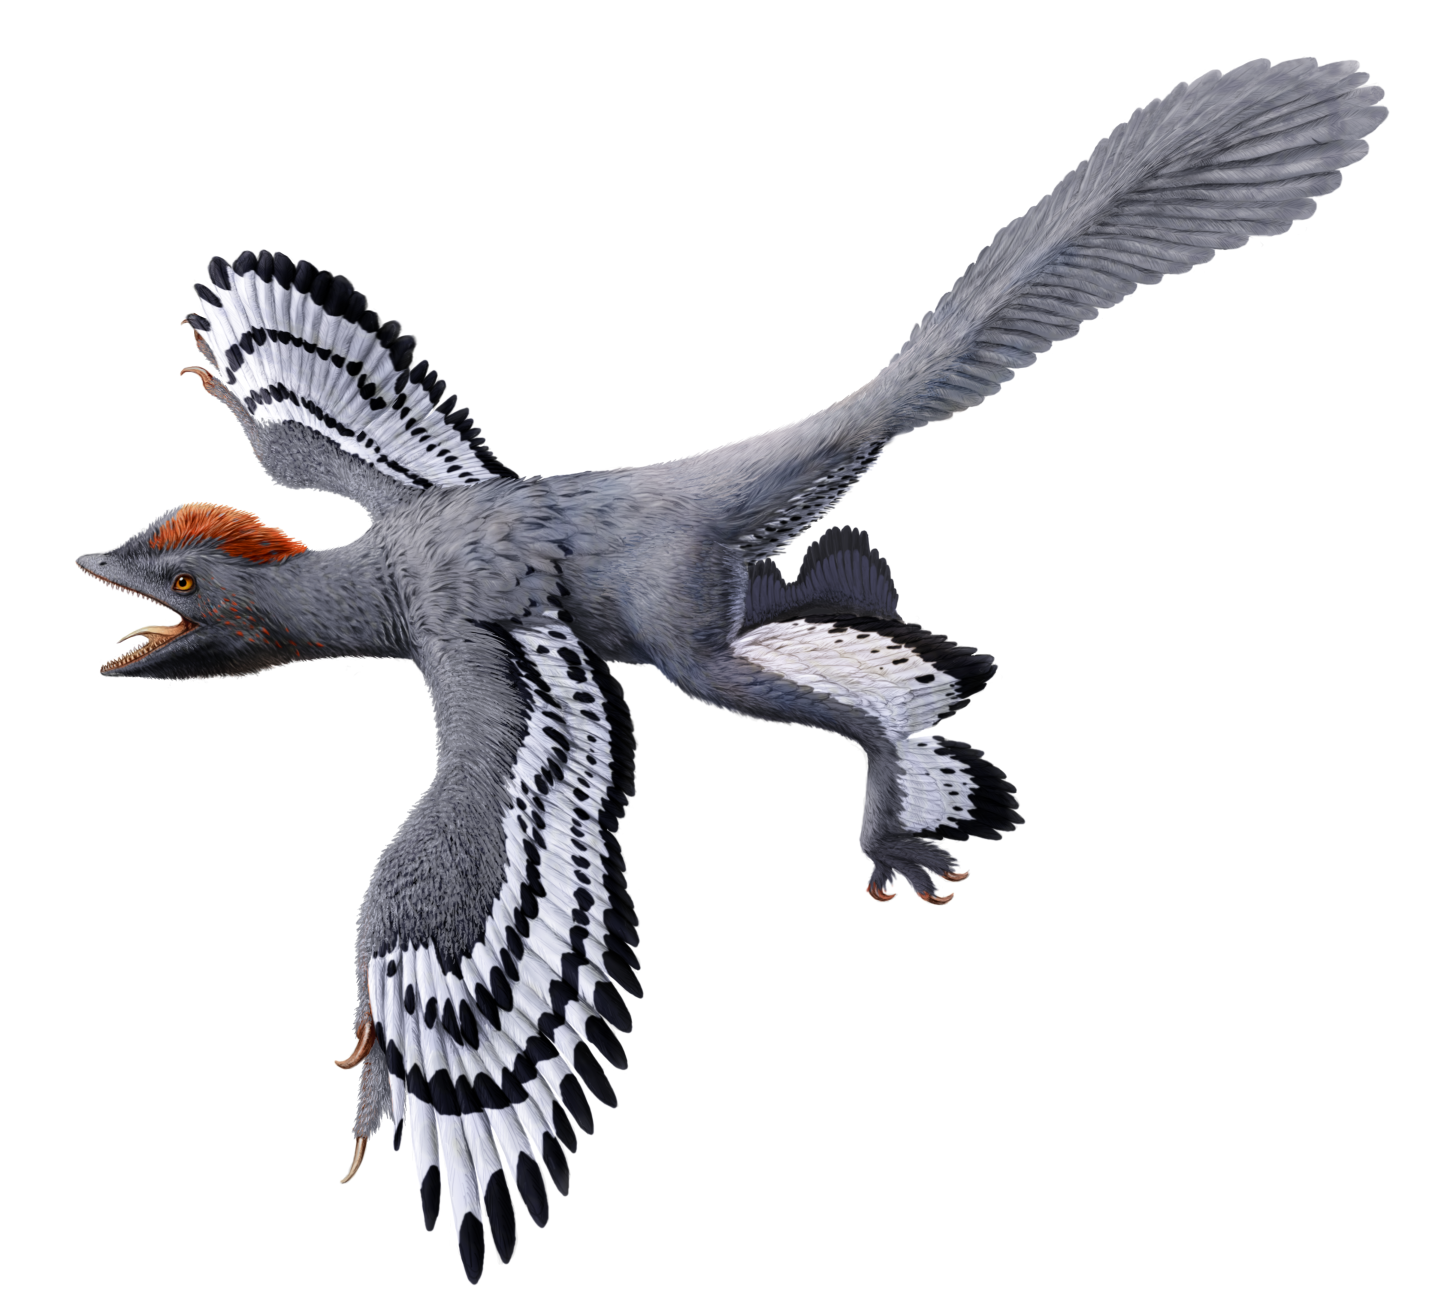 图四:近鸟龙的复原图(一种带羽毛,类似鸟类的恐龙)